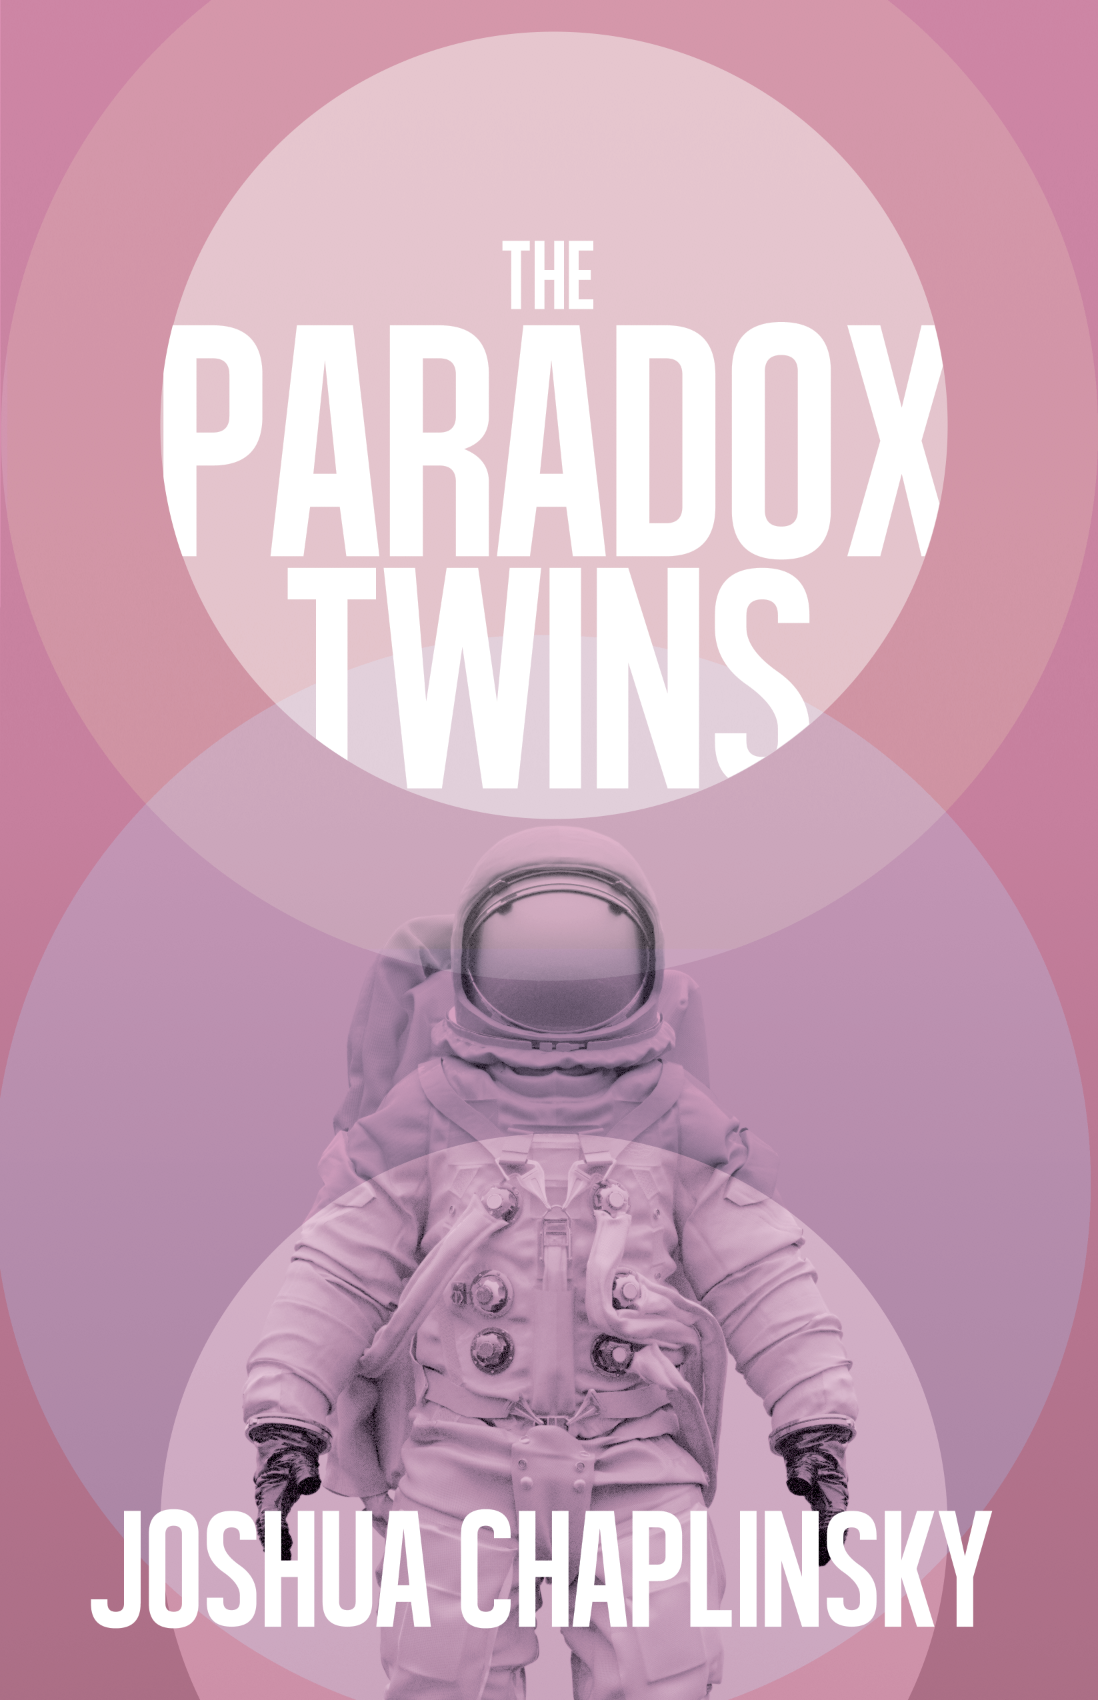 The Paradox Twins by Joshua Chaplinsky Free ePub Download